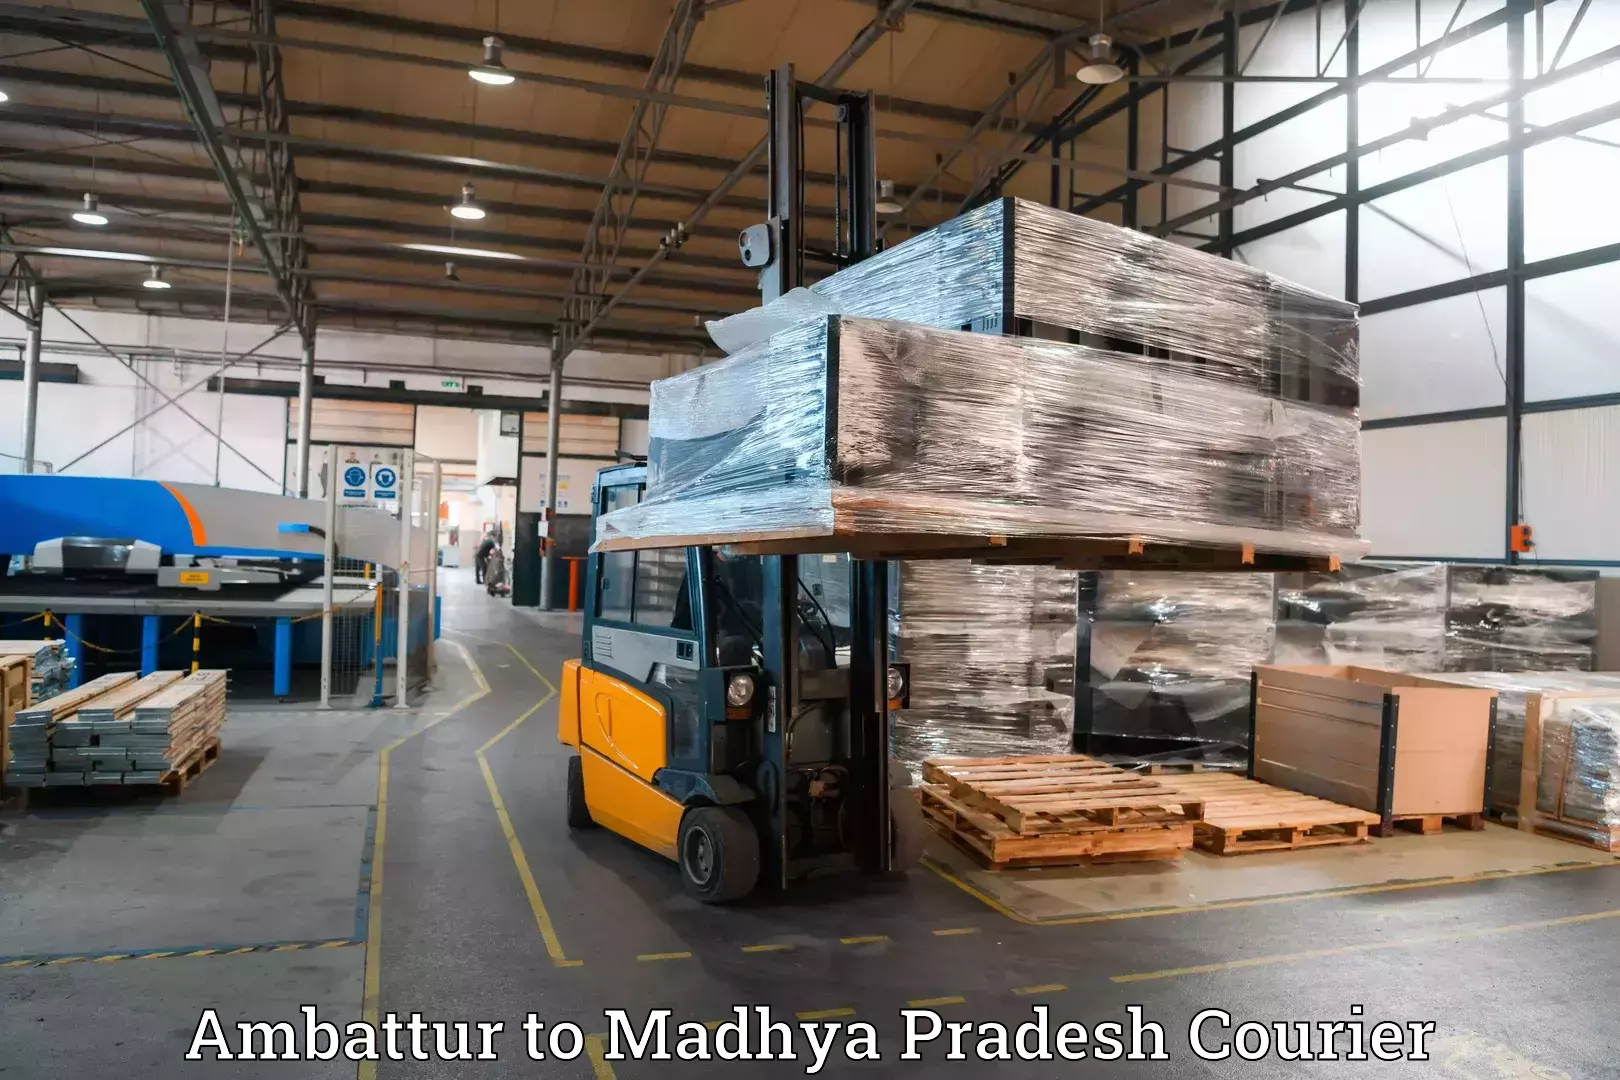 Baggage shipping experts Ambattur to Narsinghgarh